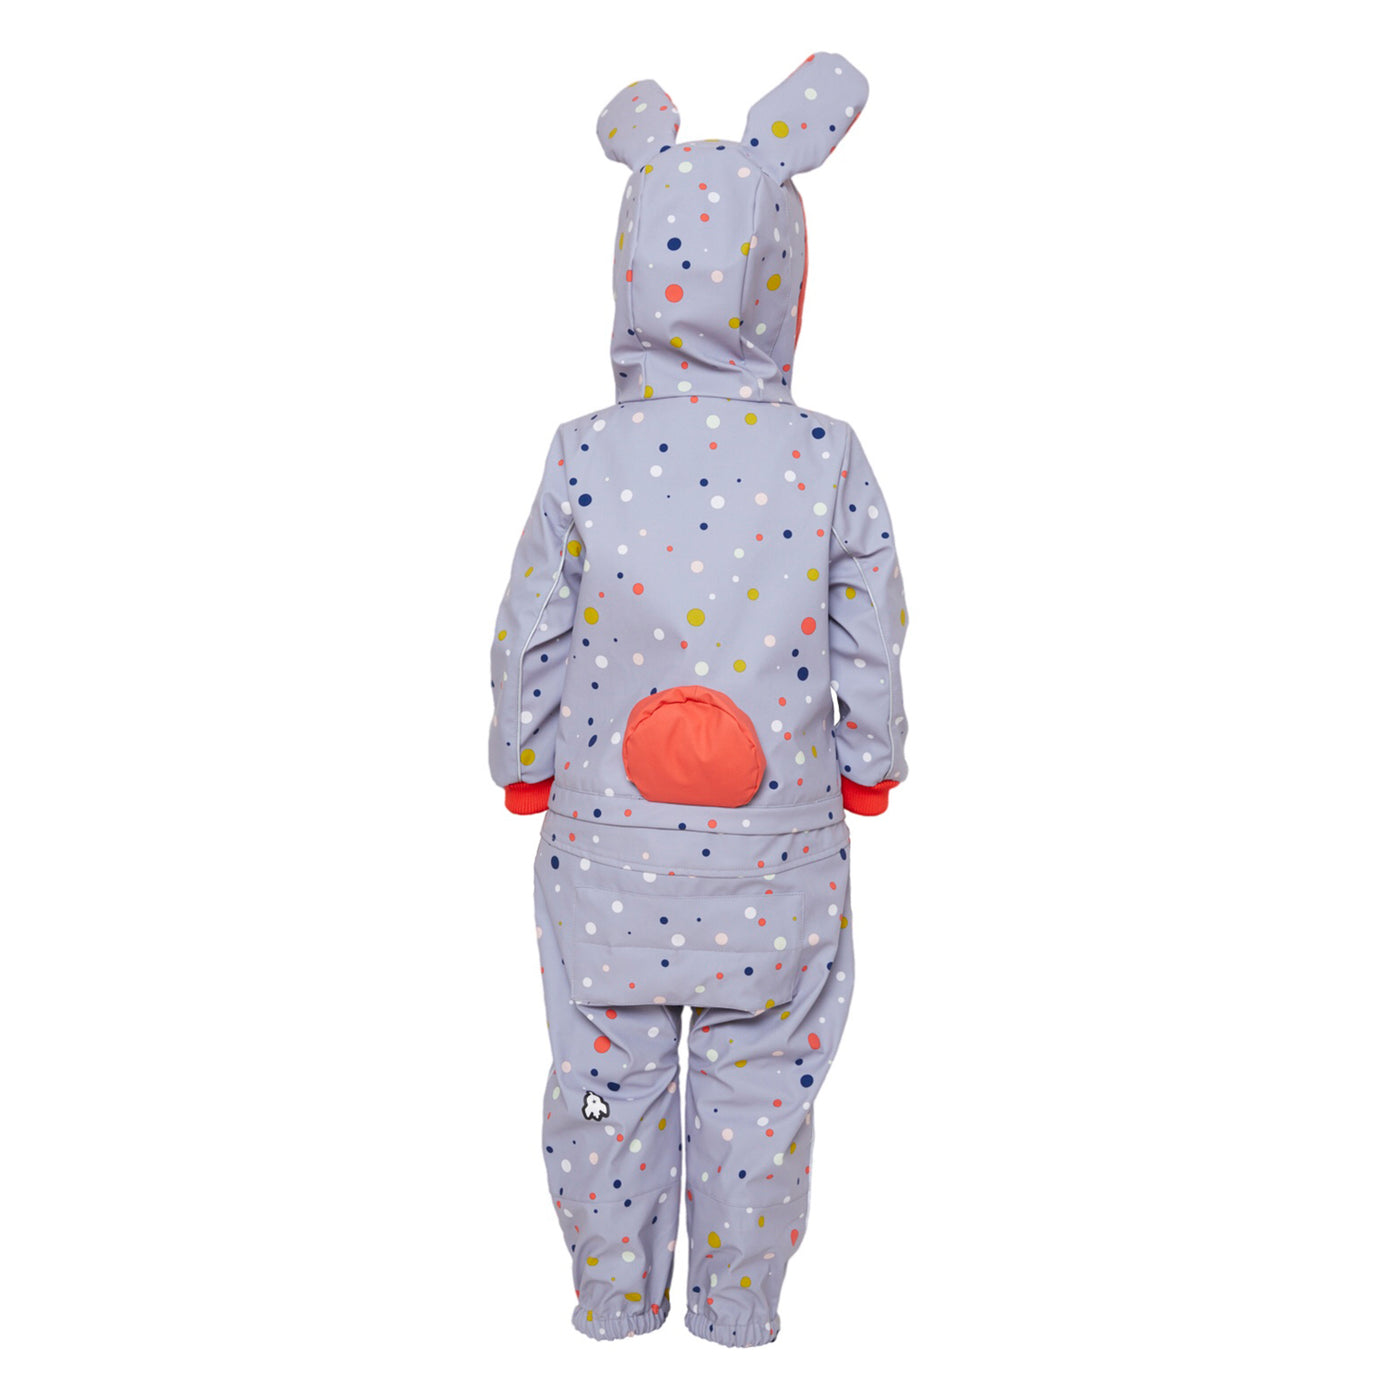 WeeDo Kids Rain Suit Bunny